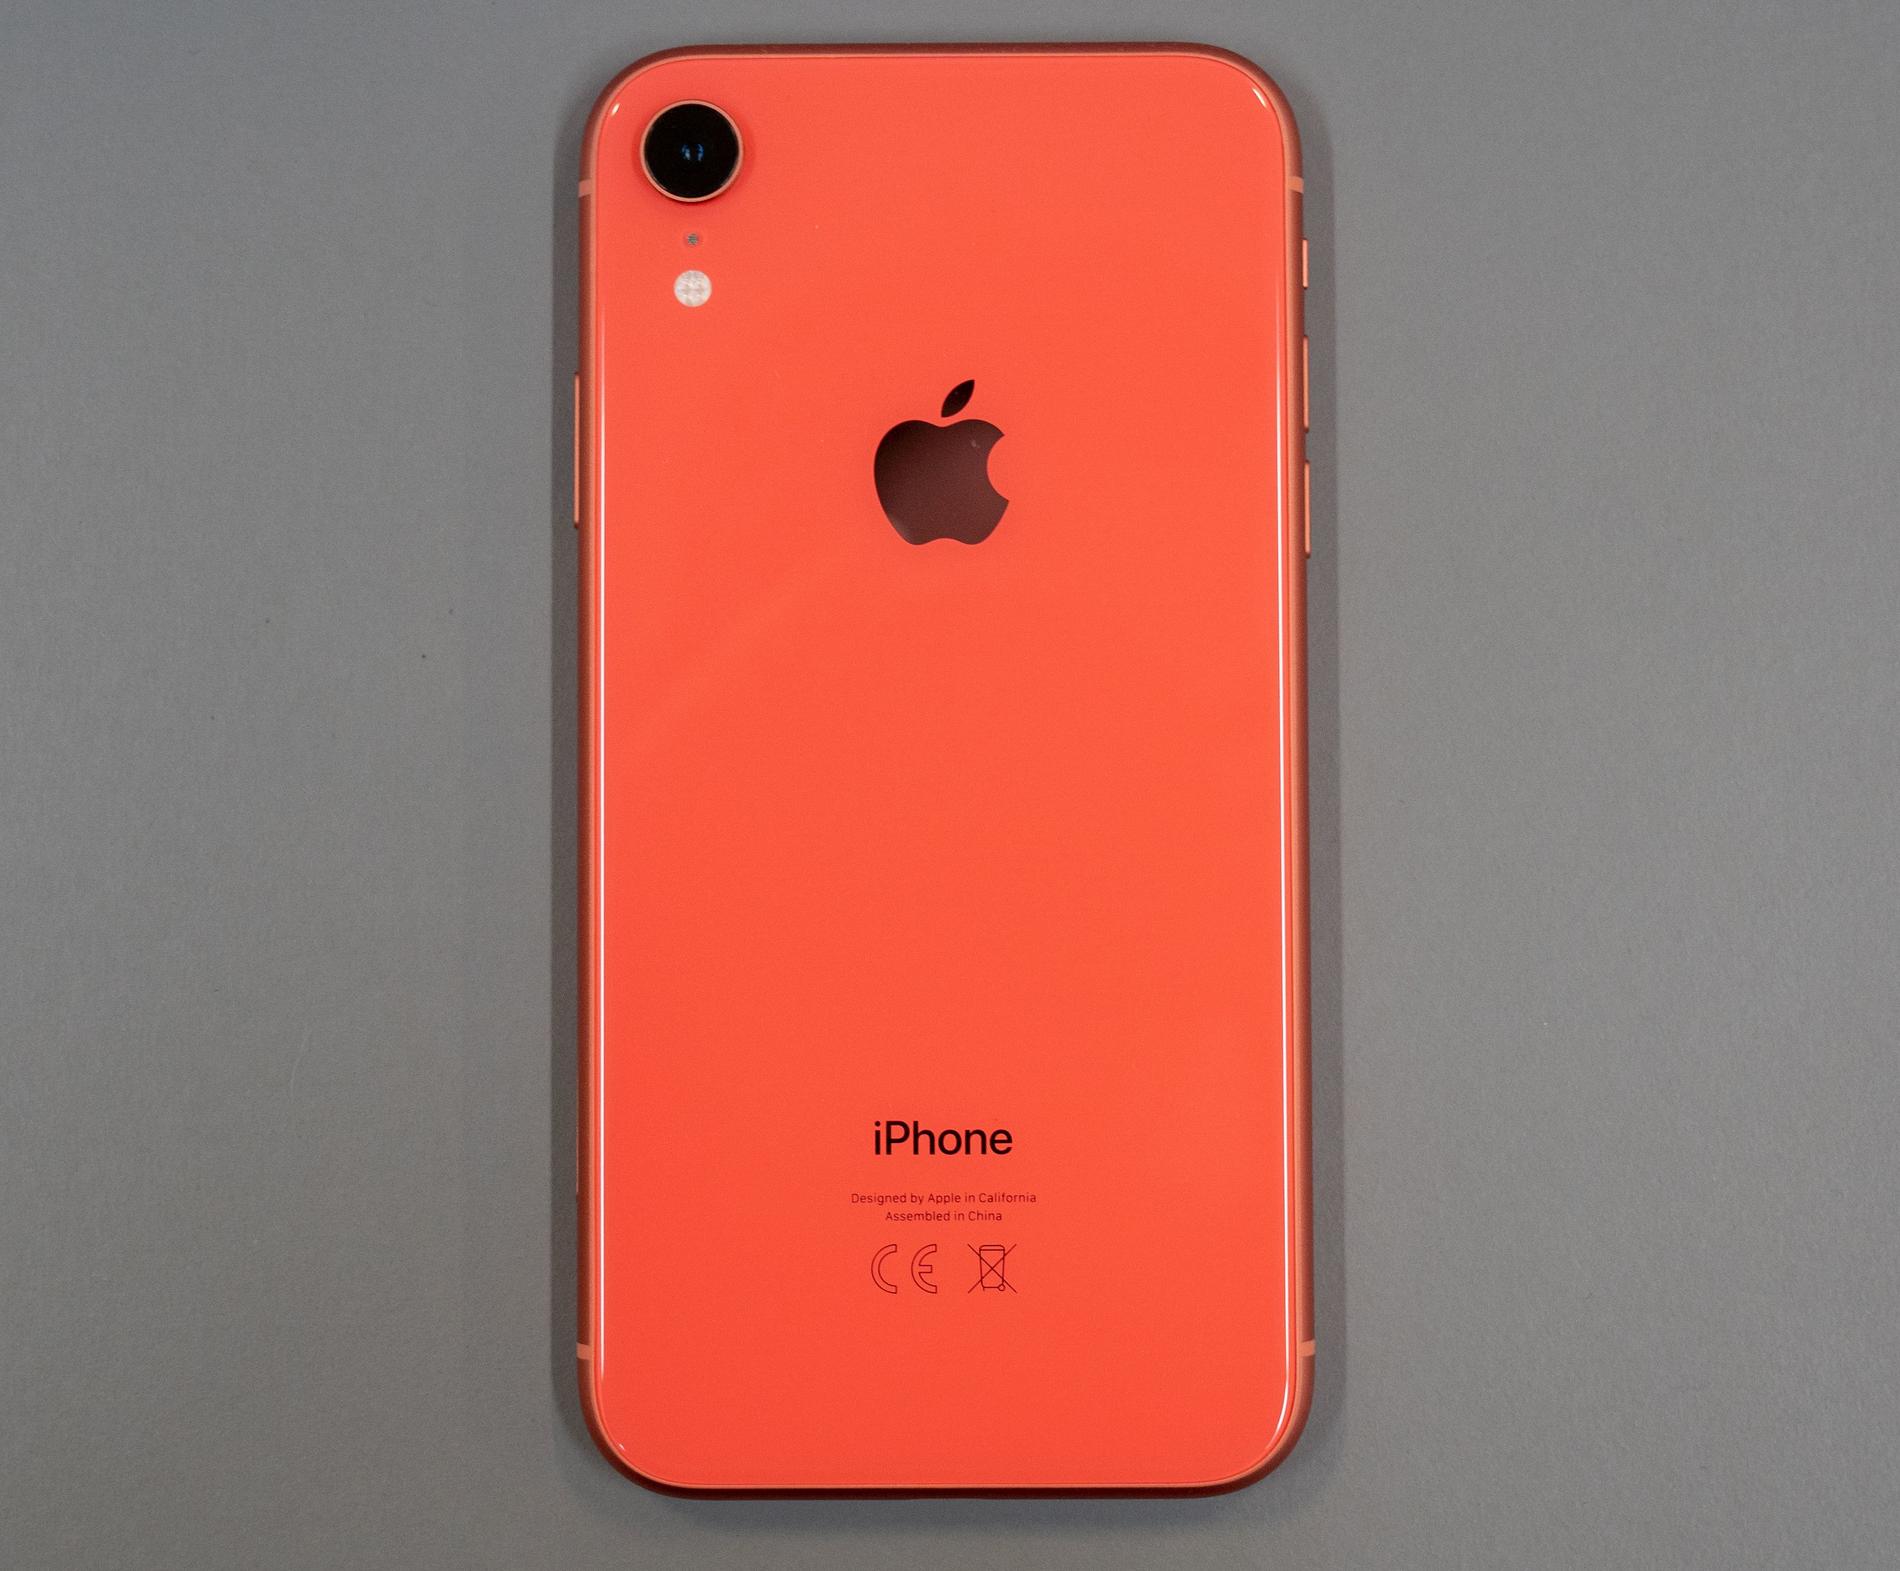 Iphone Xr kommer i flera roliga färger – den här kallas korallröd.